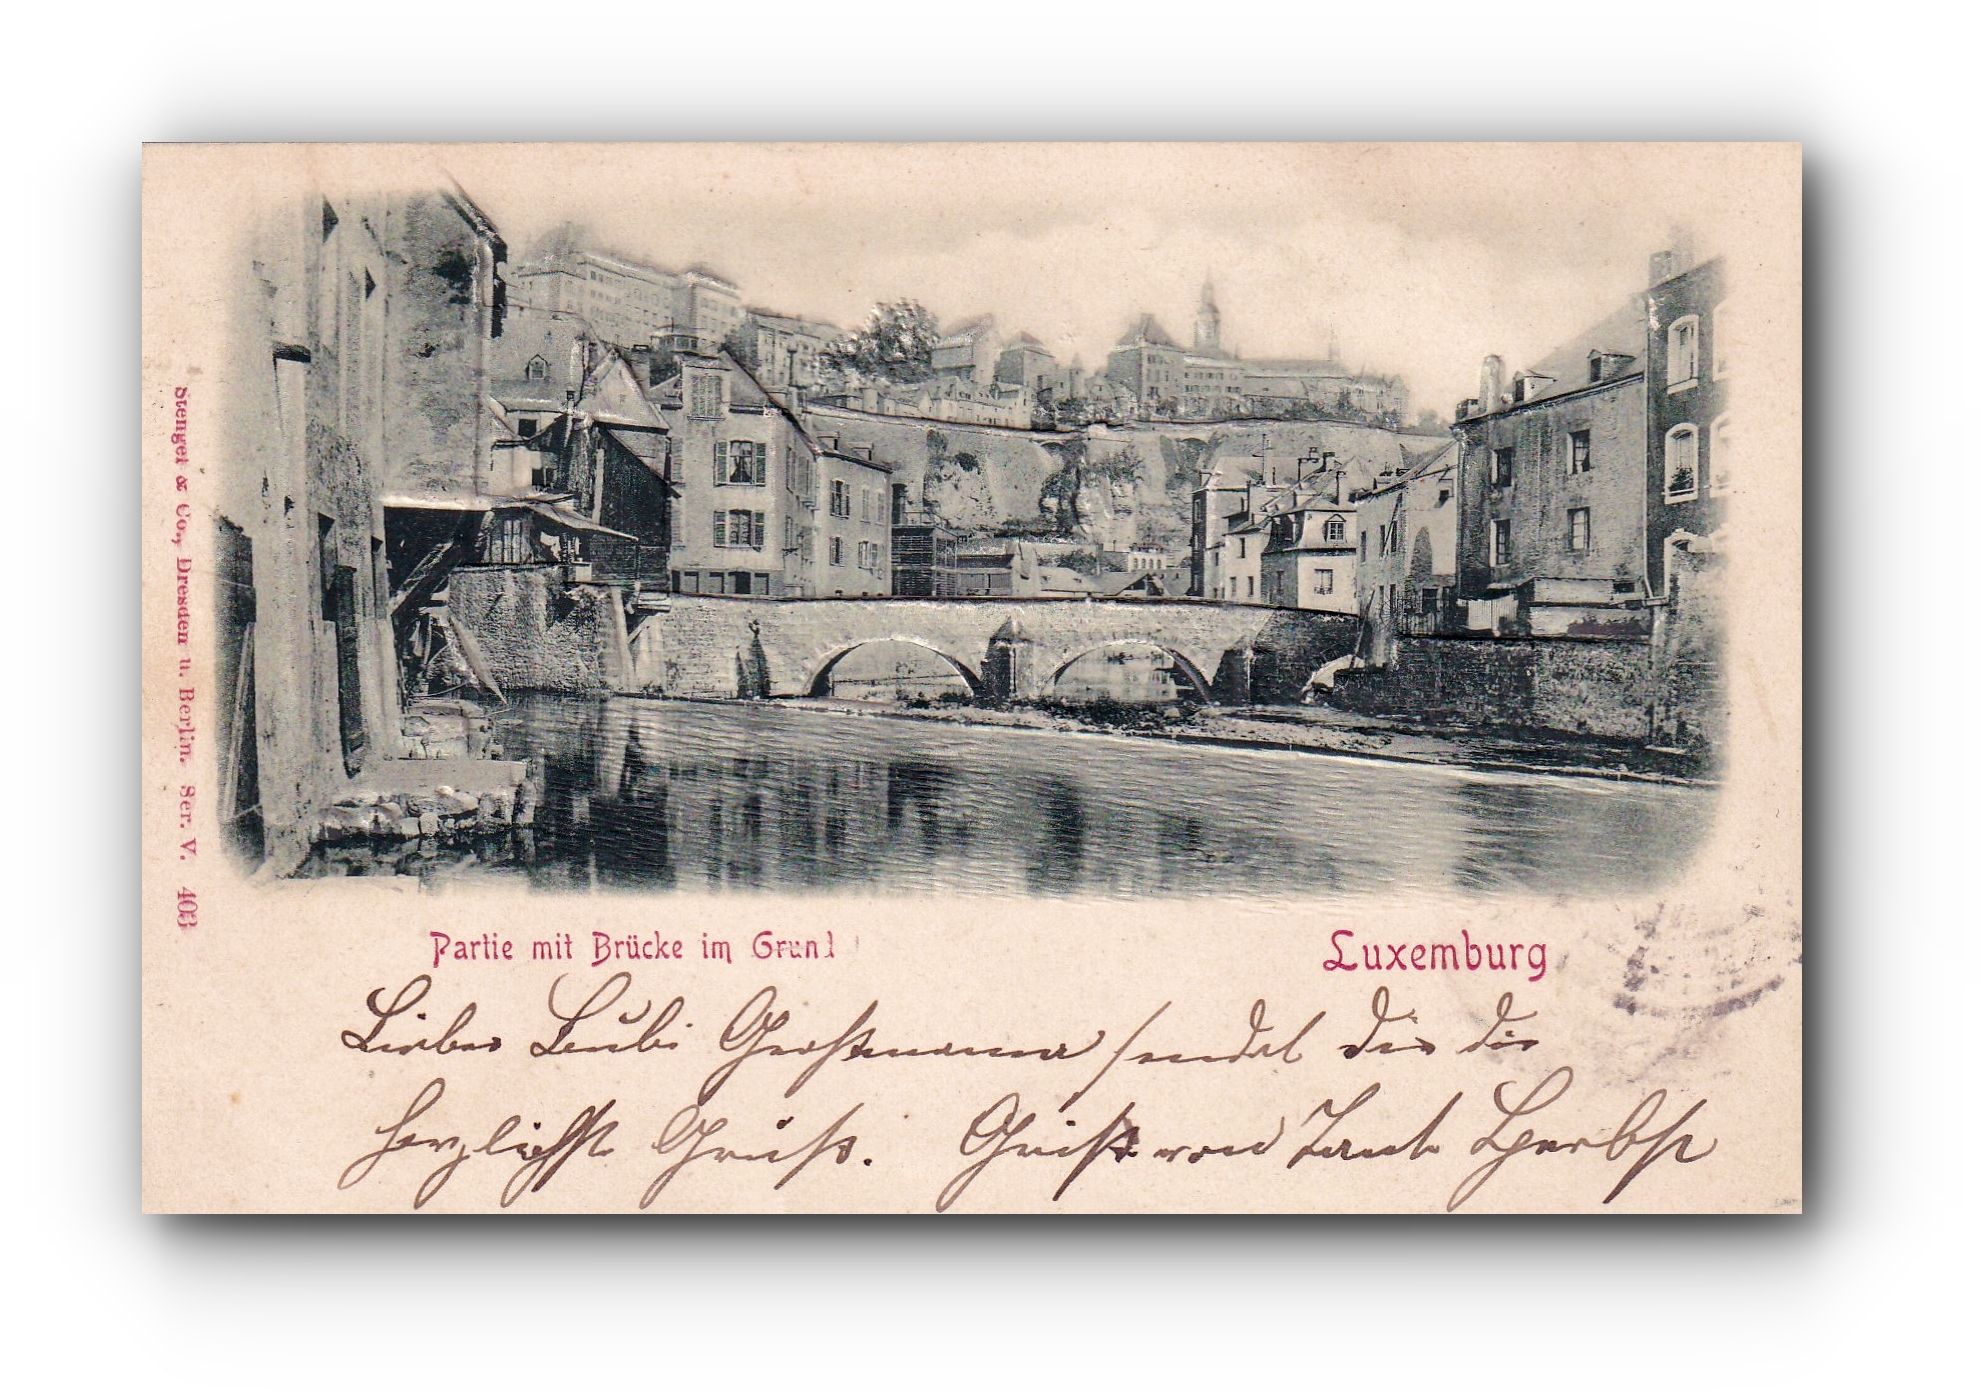 LUXEMBURG  - Partie mit Brücke im Grund - 29.08.1900 -papier gaufré